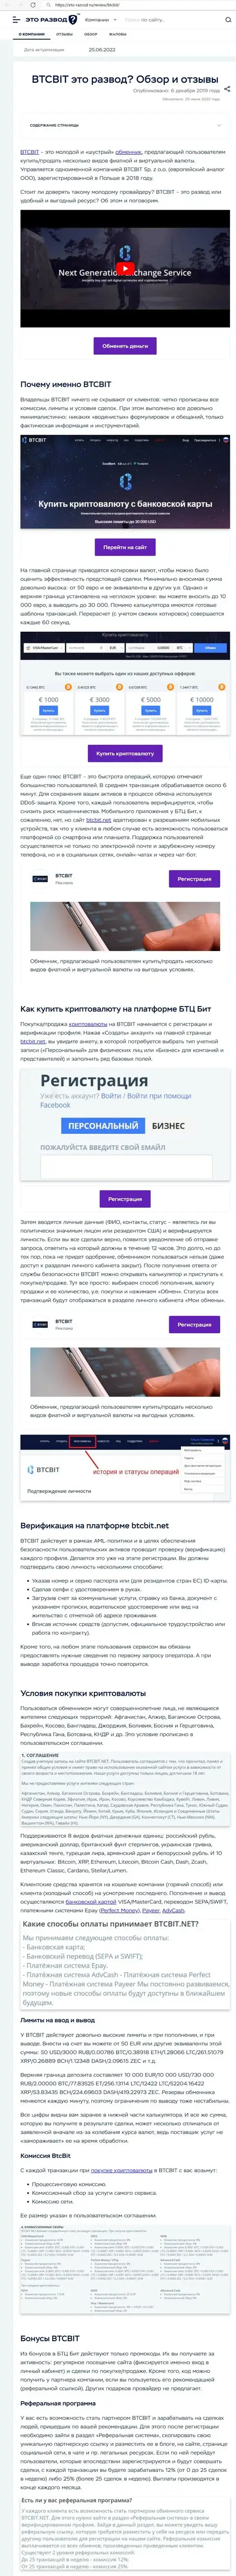 Анализ деятельности и условия для сотрудничества обменного online пункта БТК Бит в информационном материале на онлайн-ресурсе Eto Razvod Ru